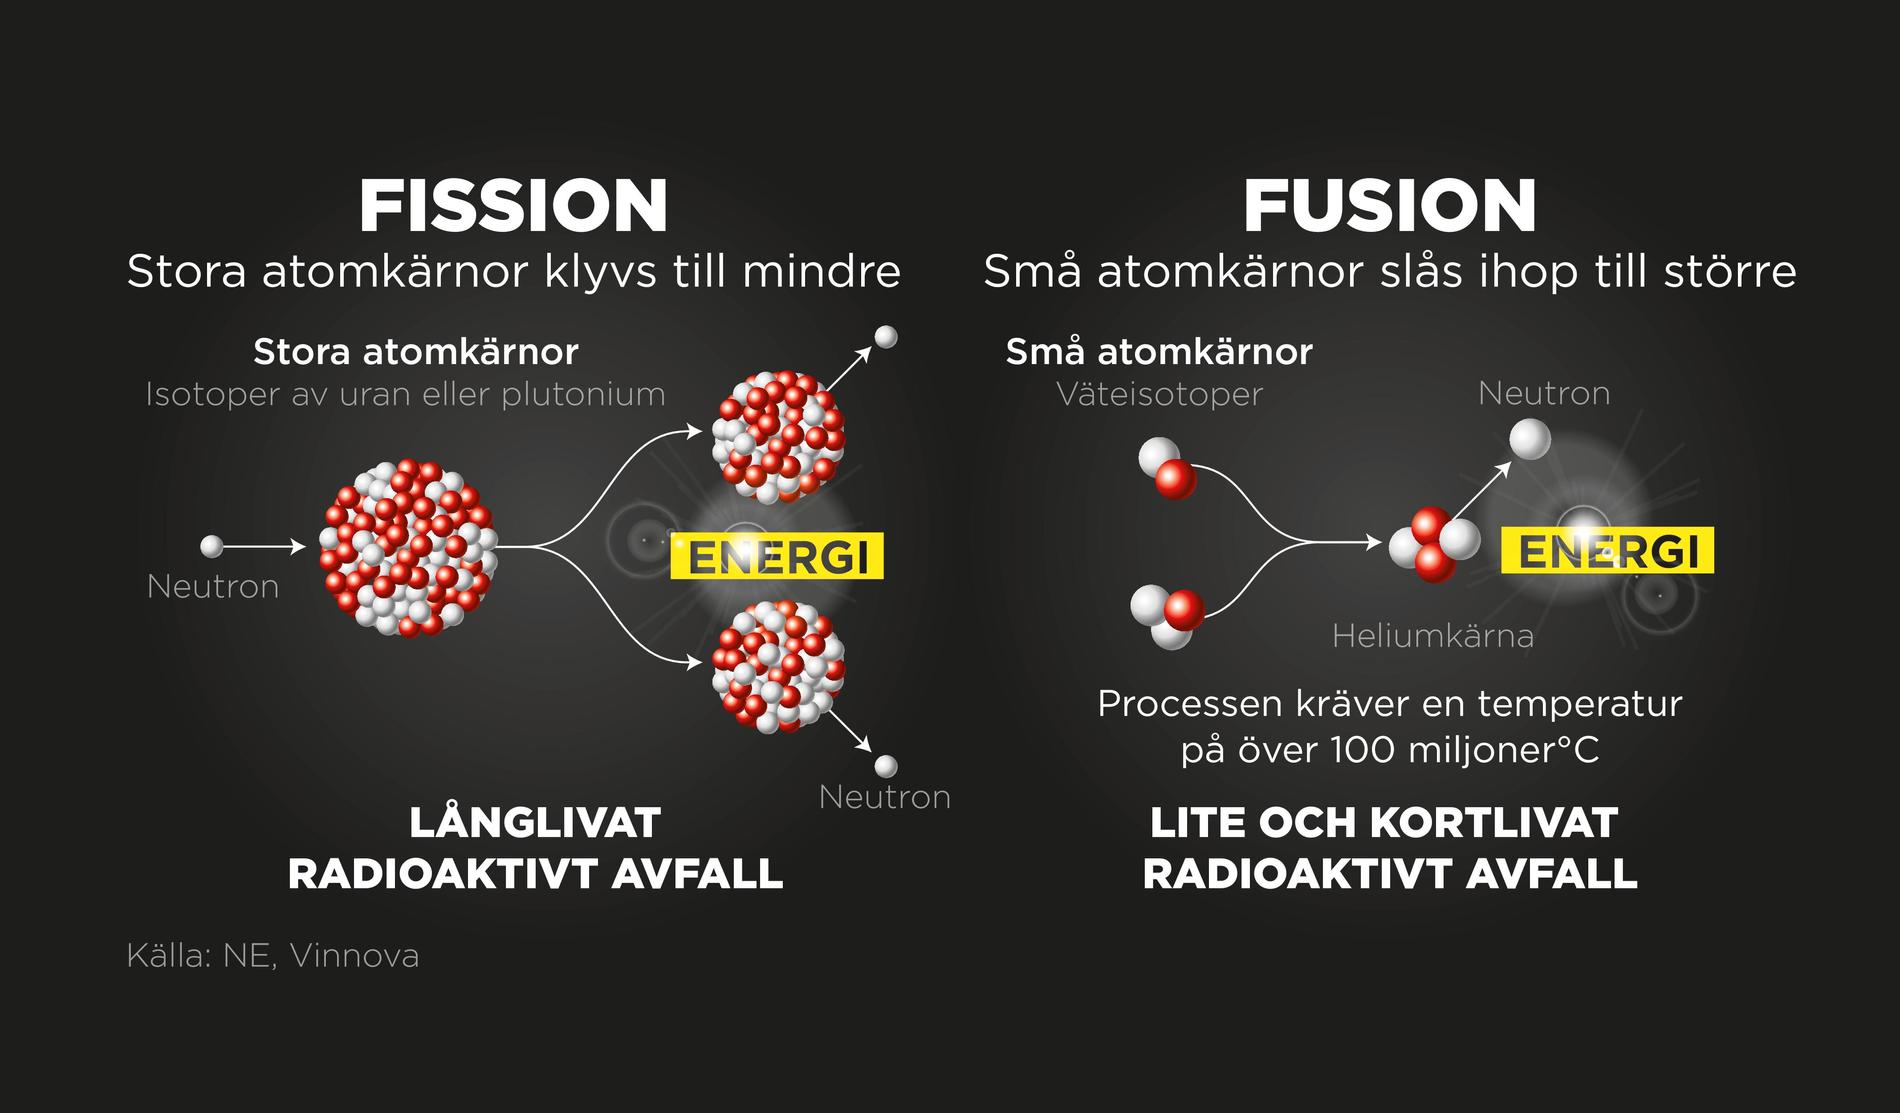 Vid fission klyvs atomkärnor till mindre, vid fusion slås atomkärnor ihop.